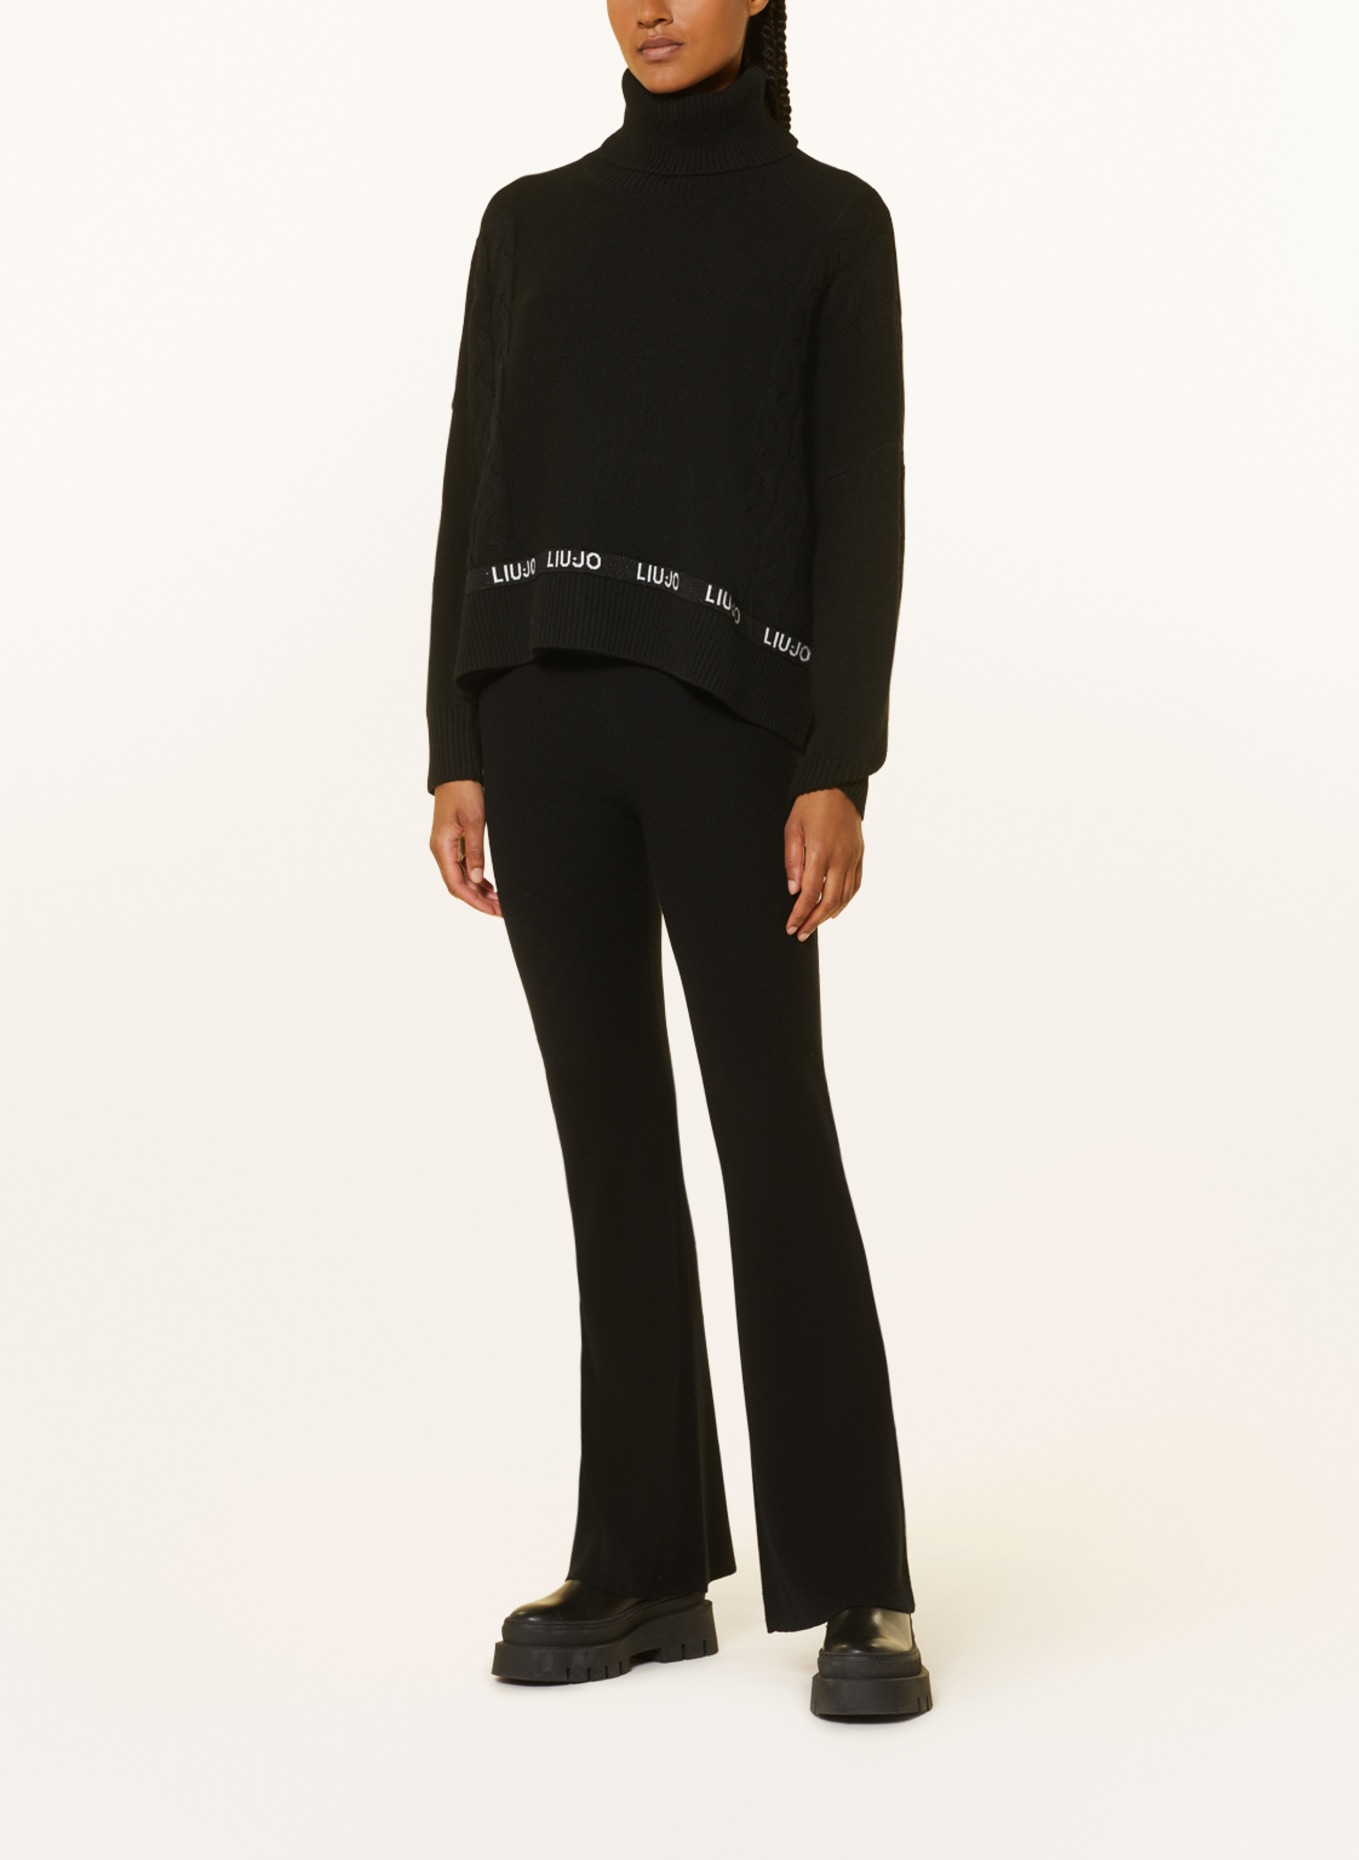 LIU JO Turtleneck sweater, Color: BLACK (Image 2)